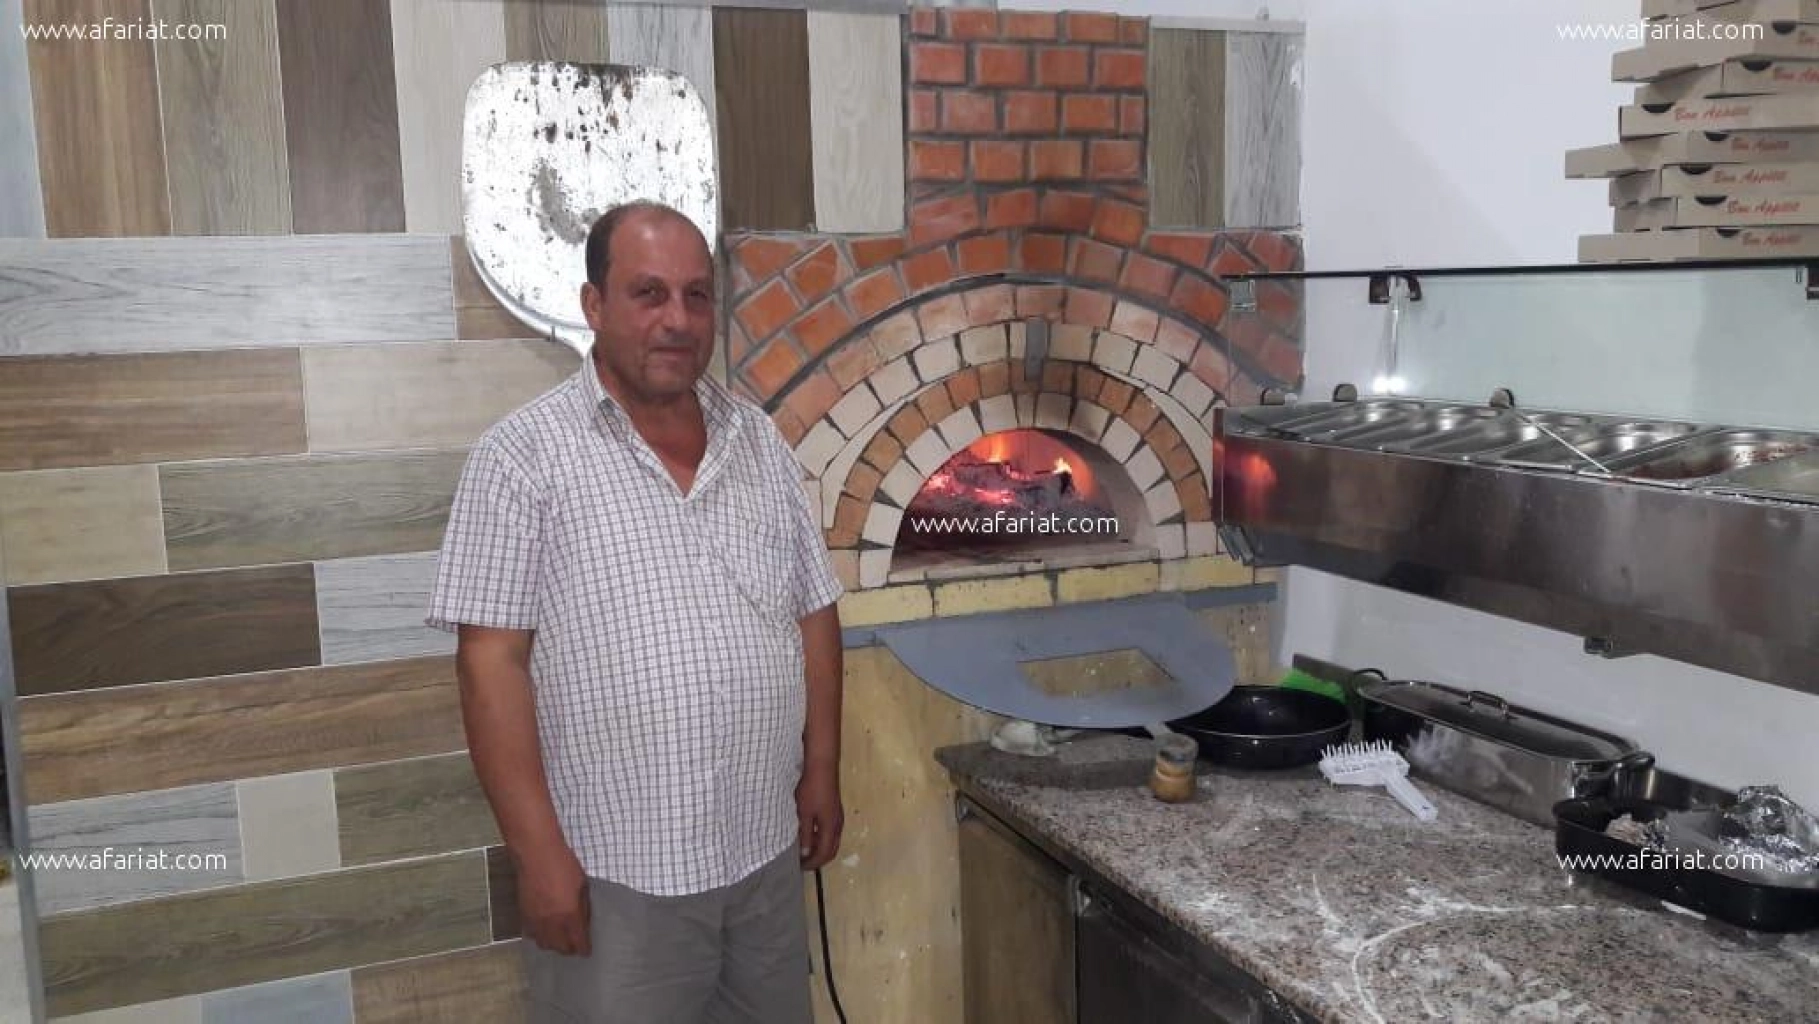 fabrication   de  fours pizza a bois et a gaz